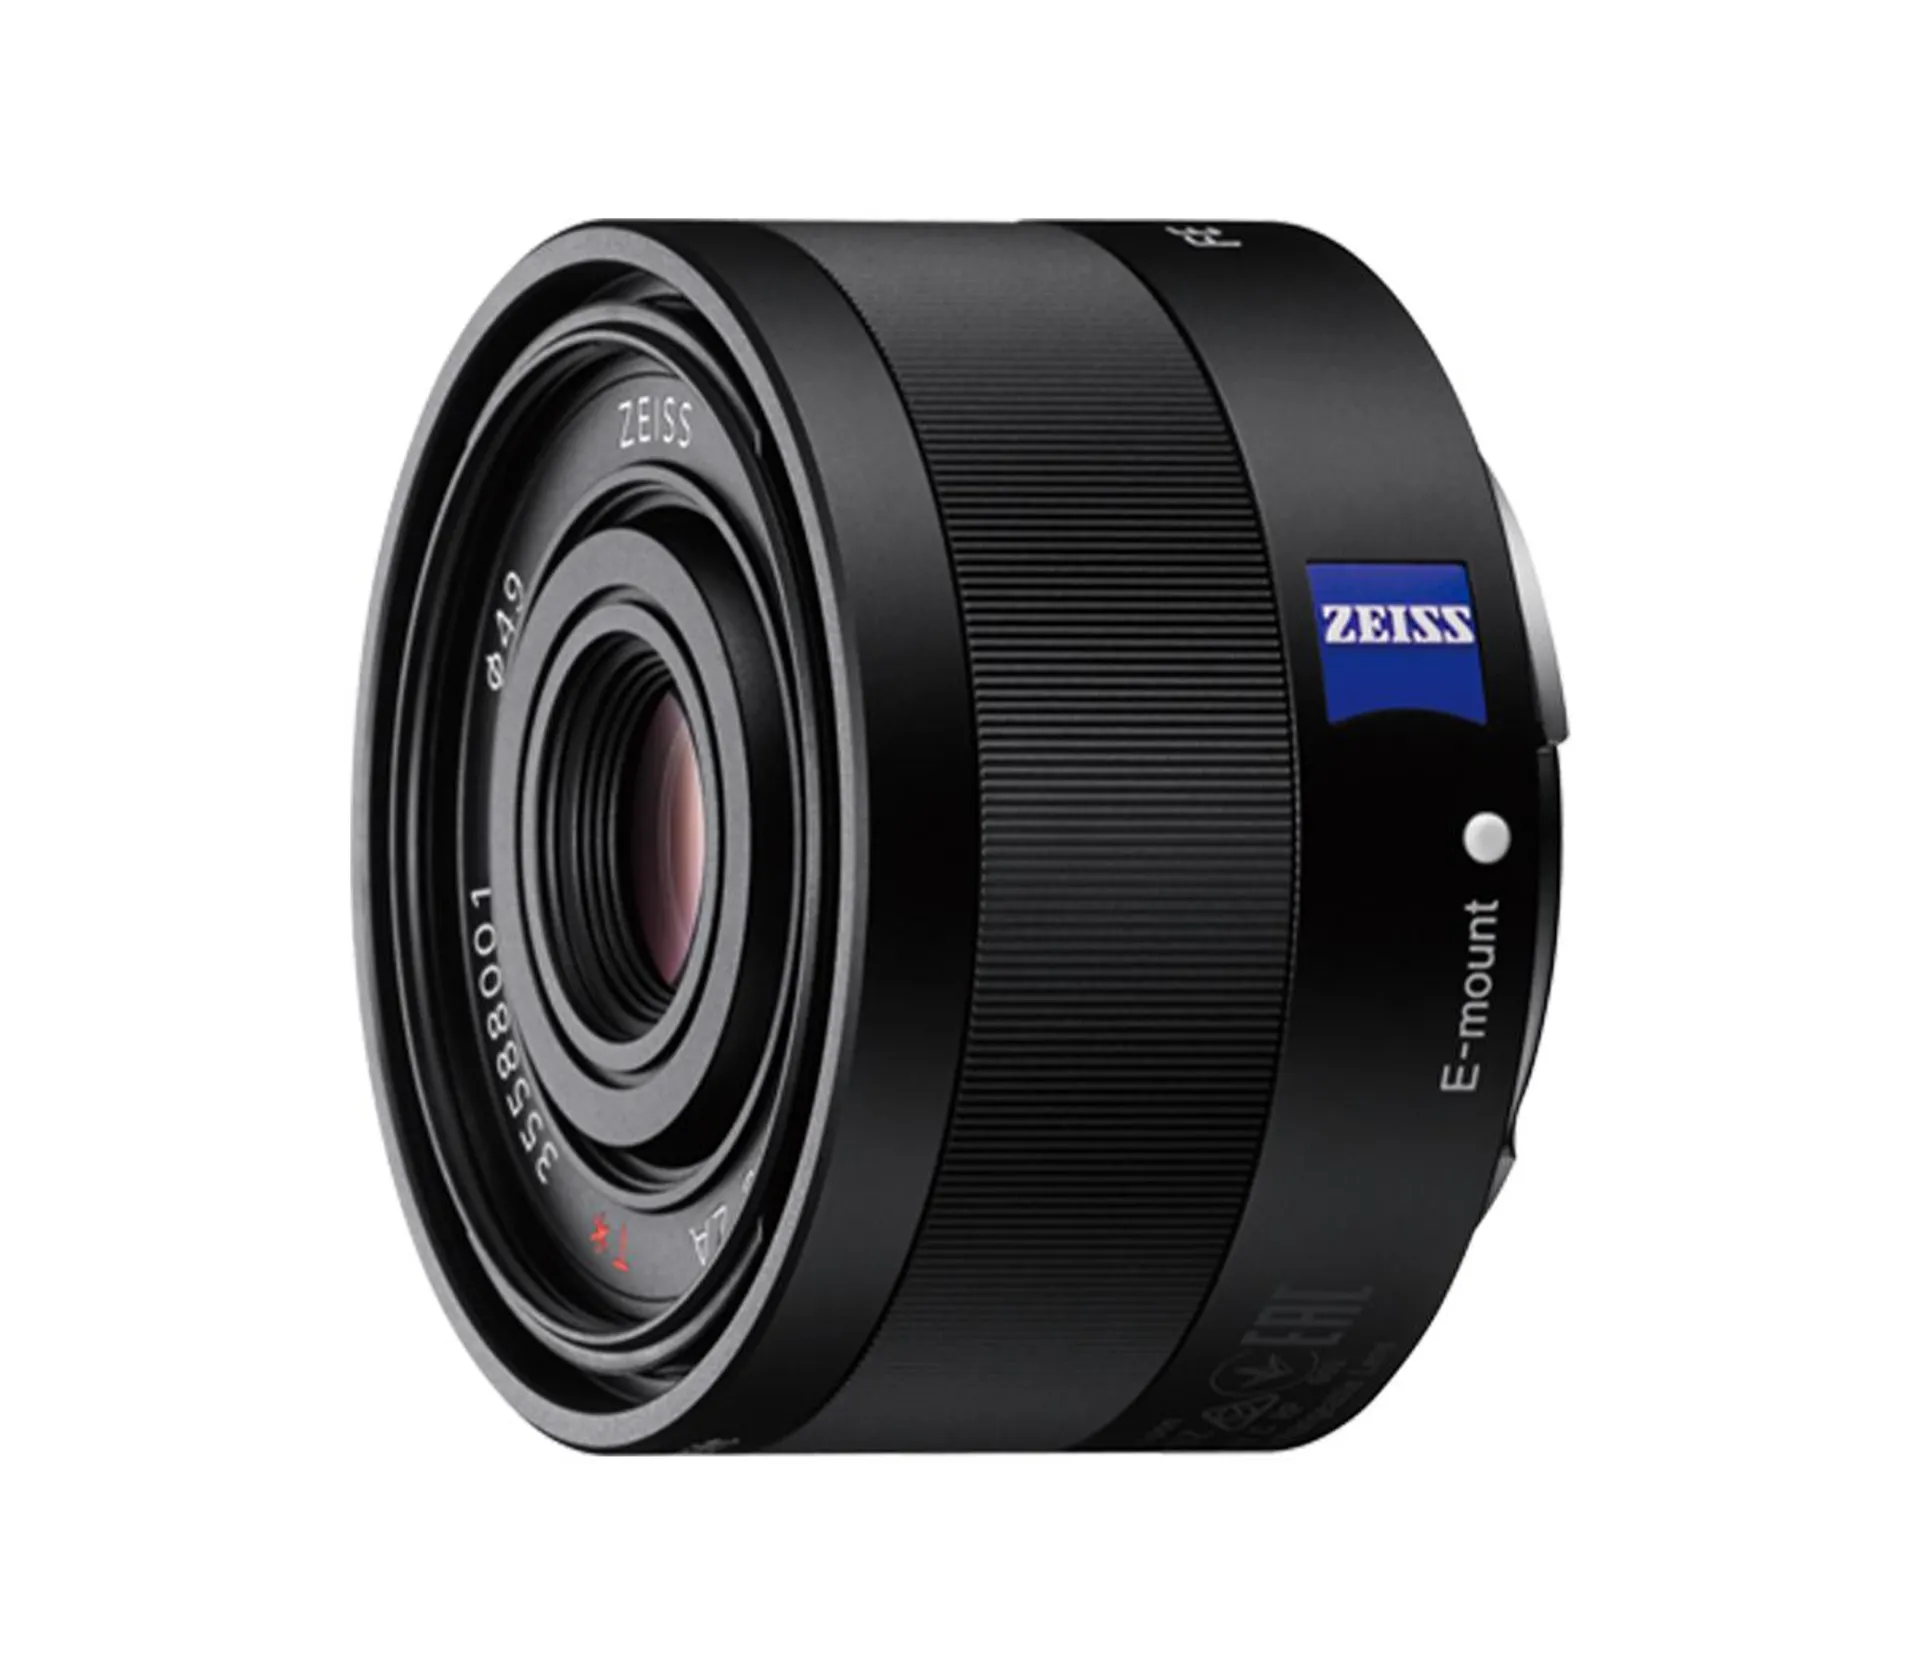 Sonnar FE 35mm F2.8 ZA Full-frame Standard Prime ZEISS Lens